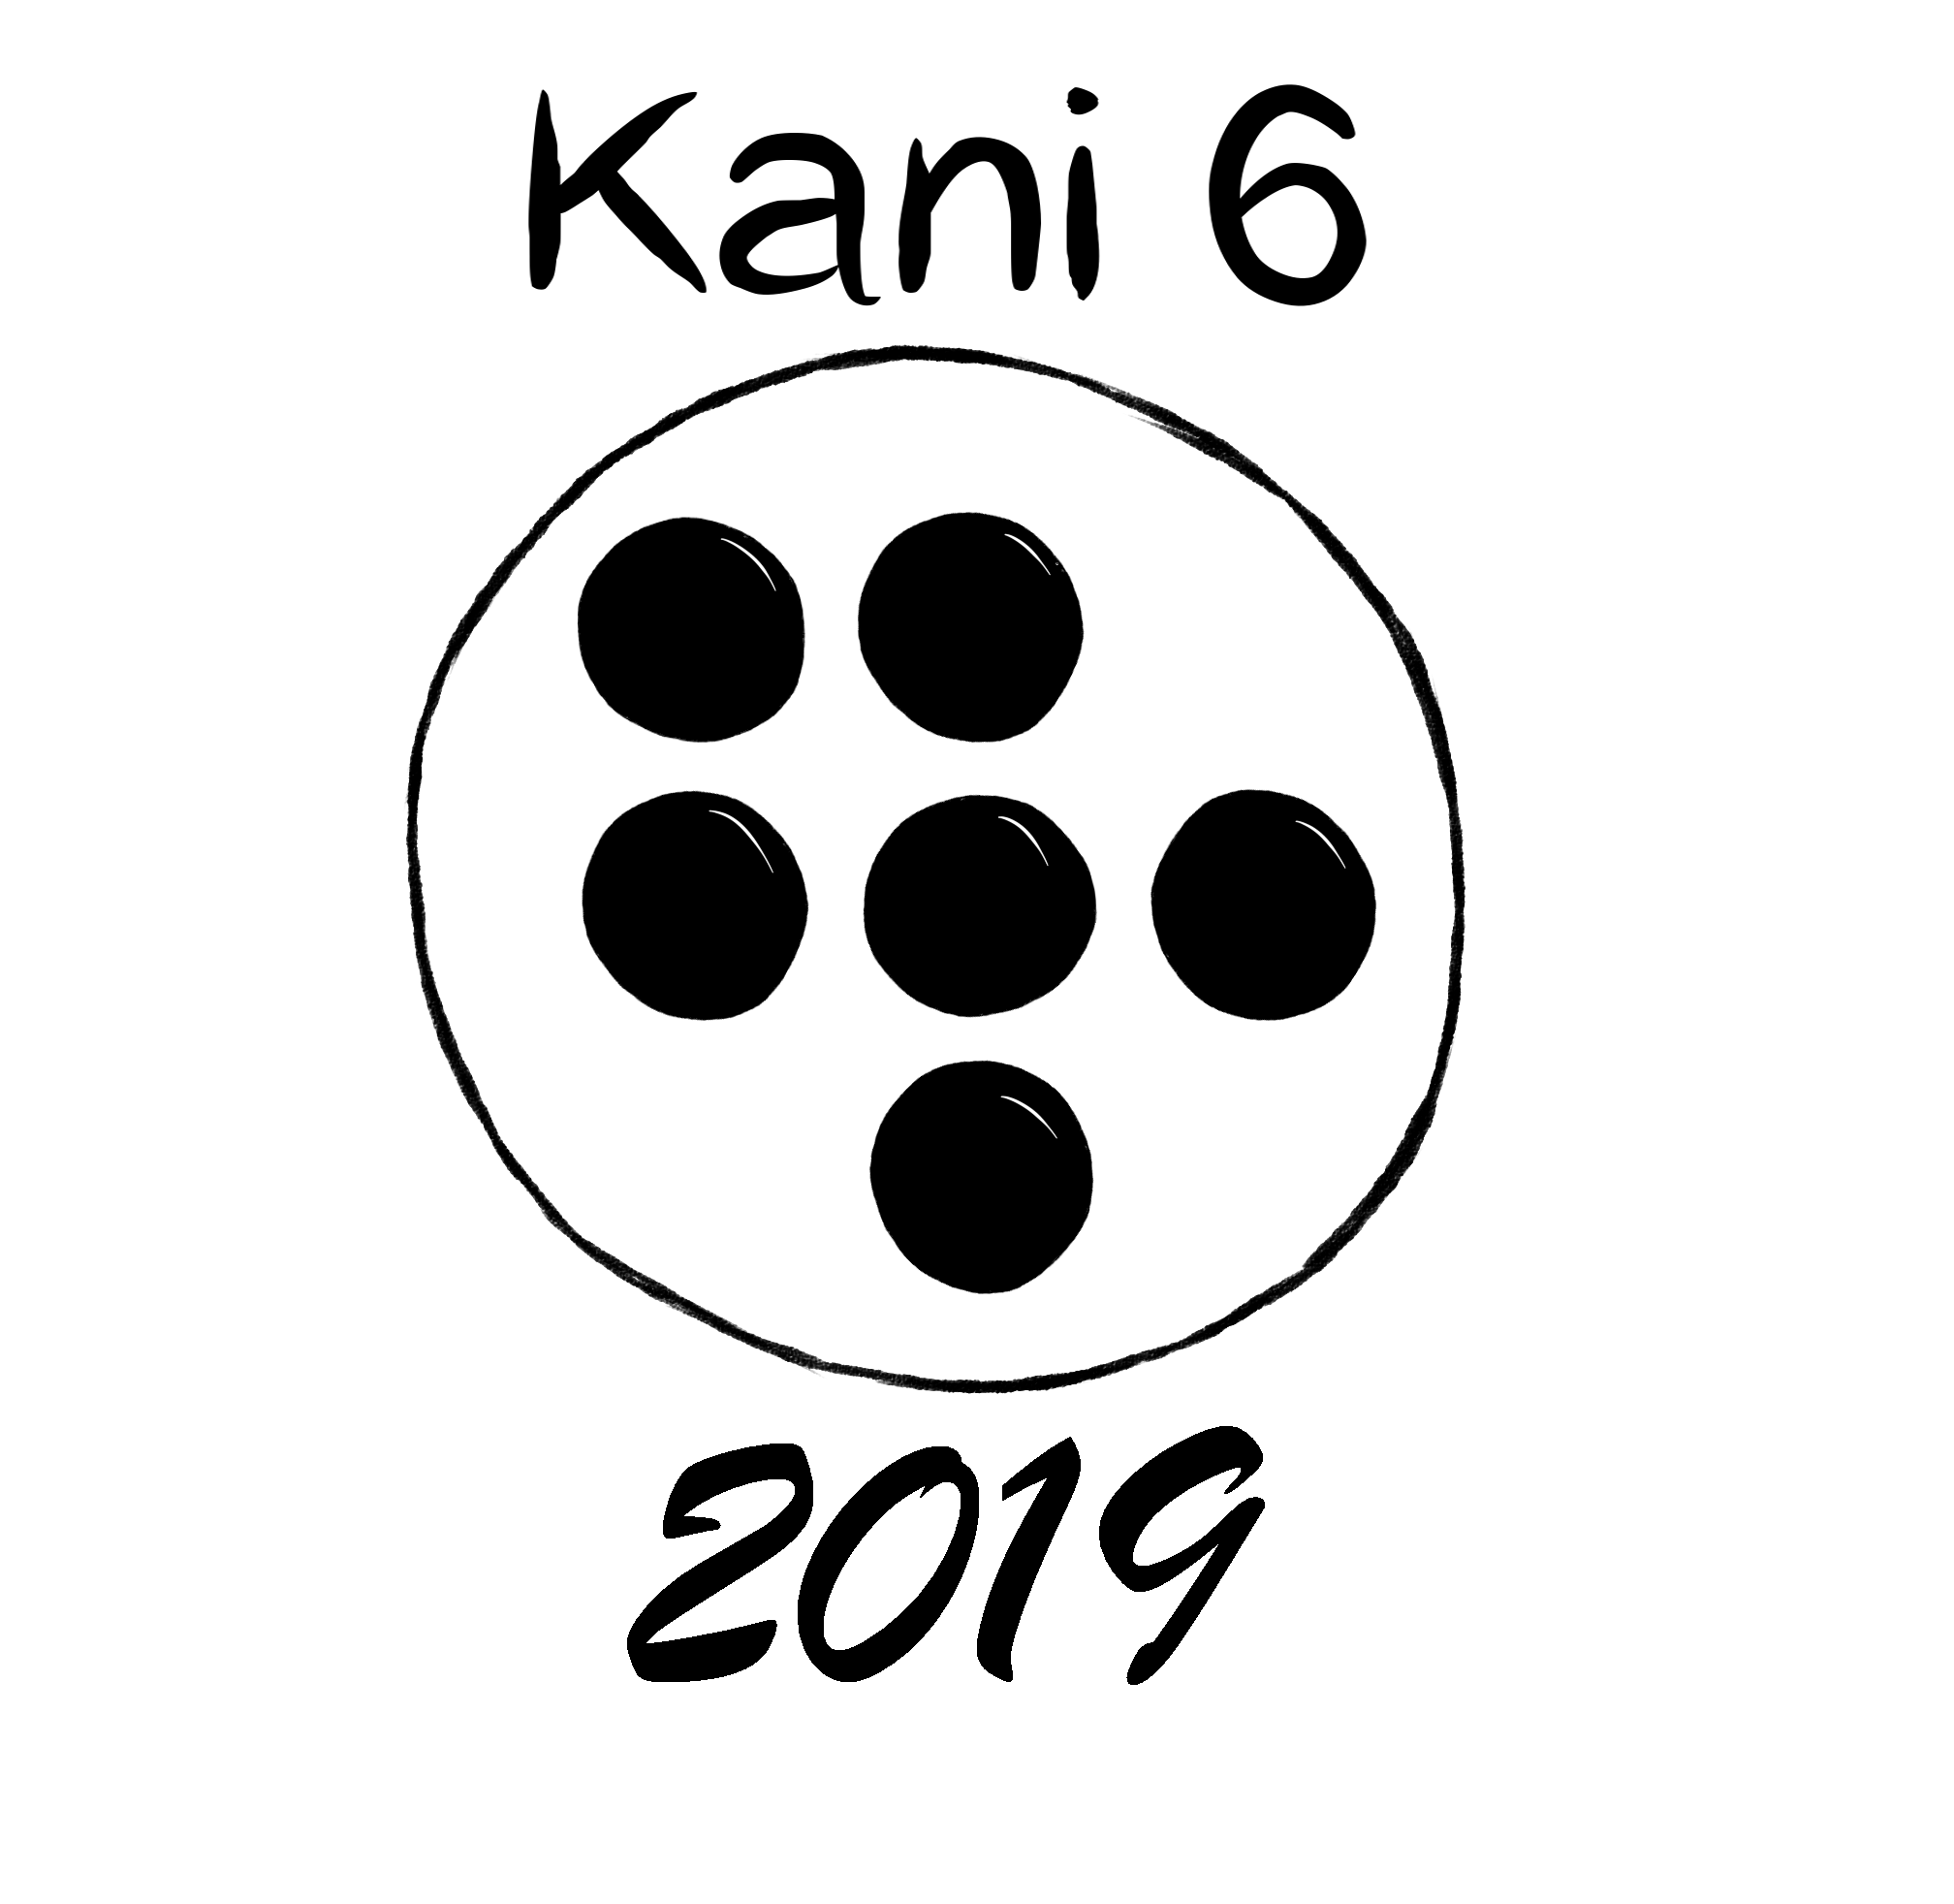 Kani62019/Kani6.png